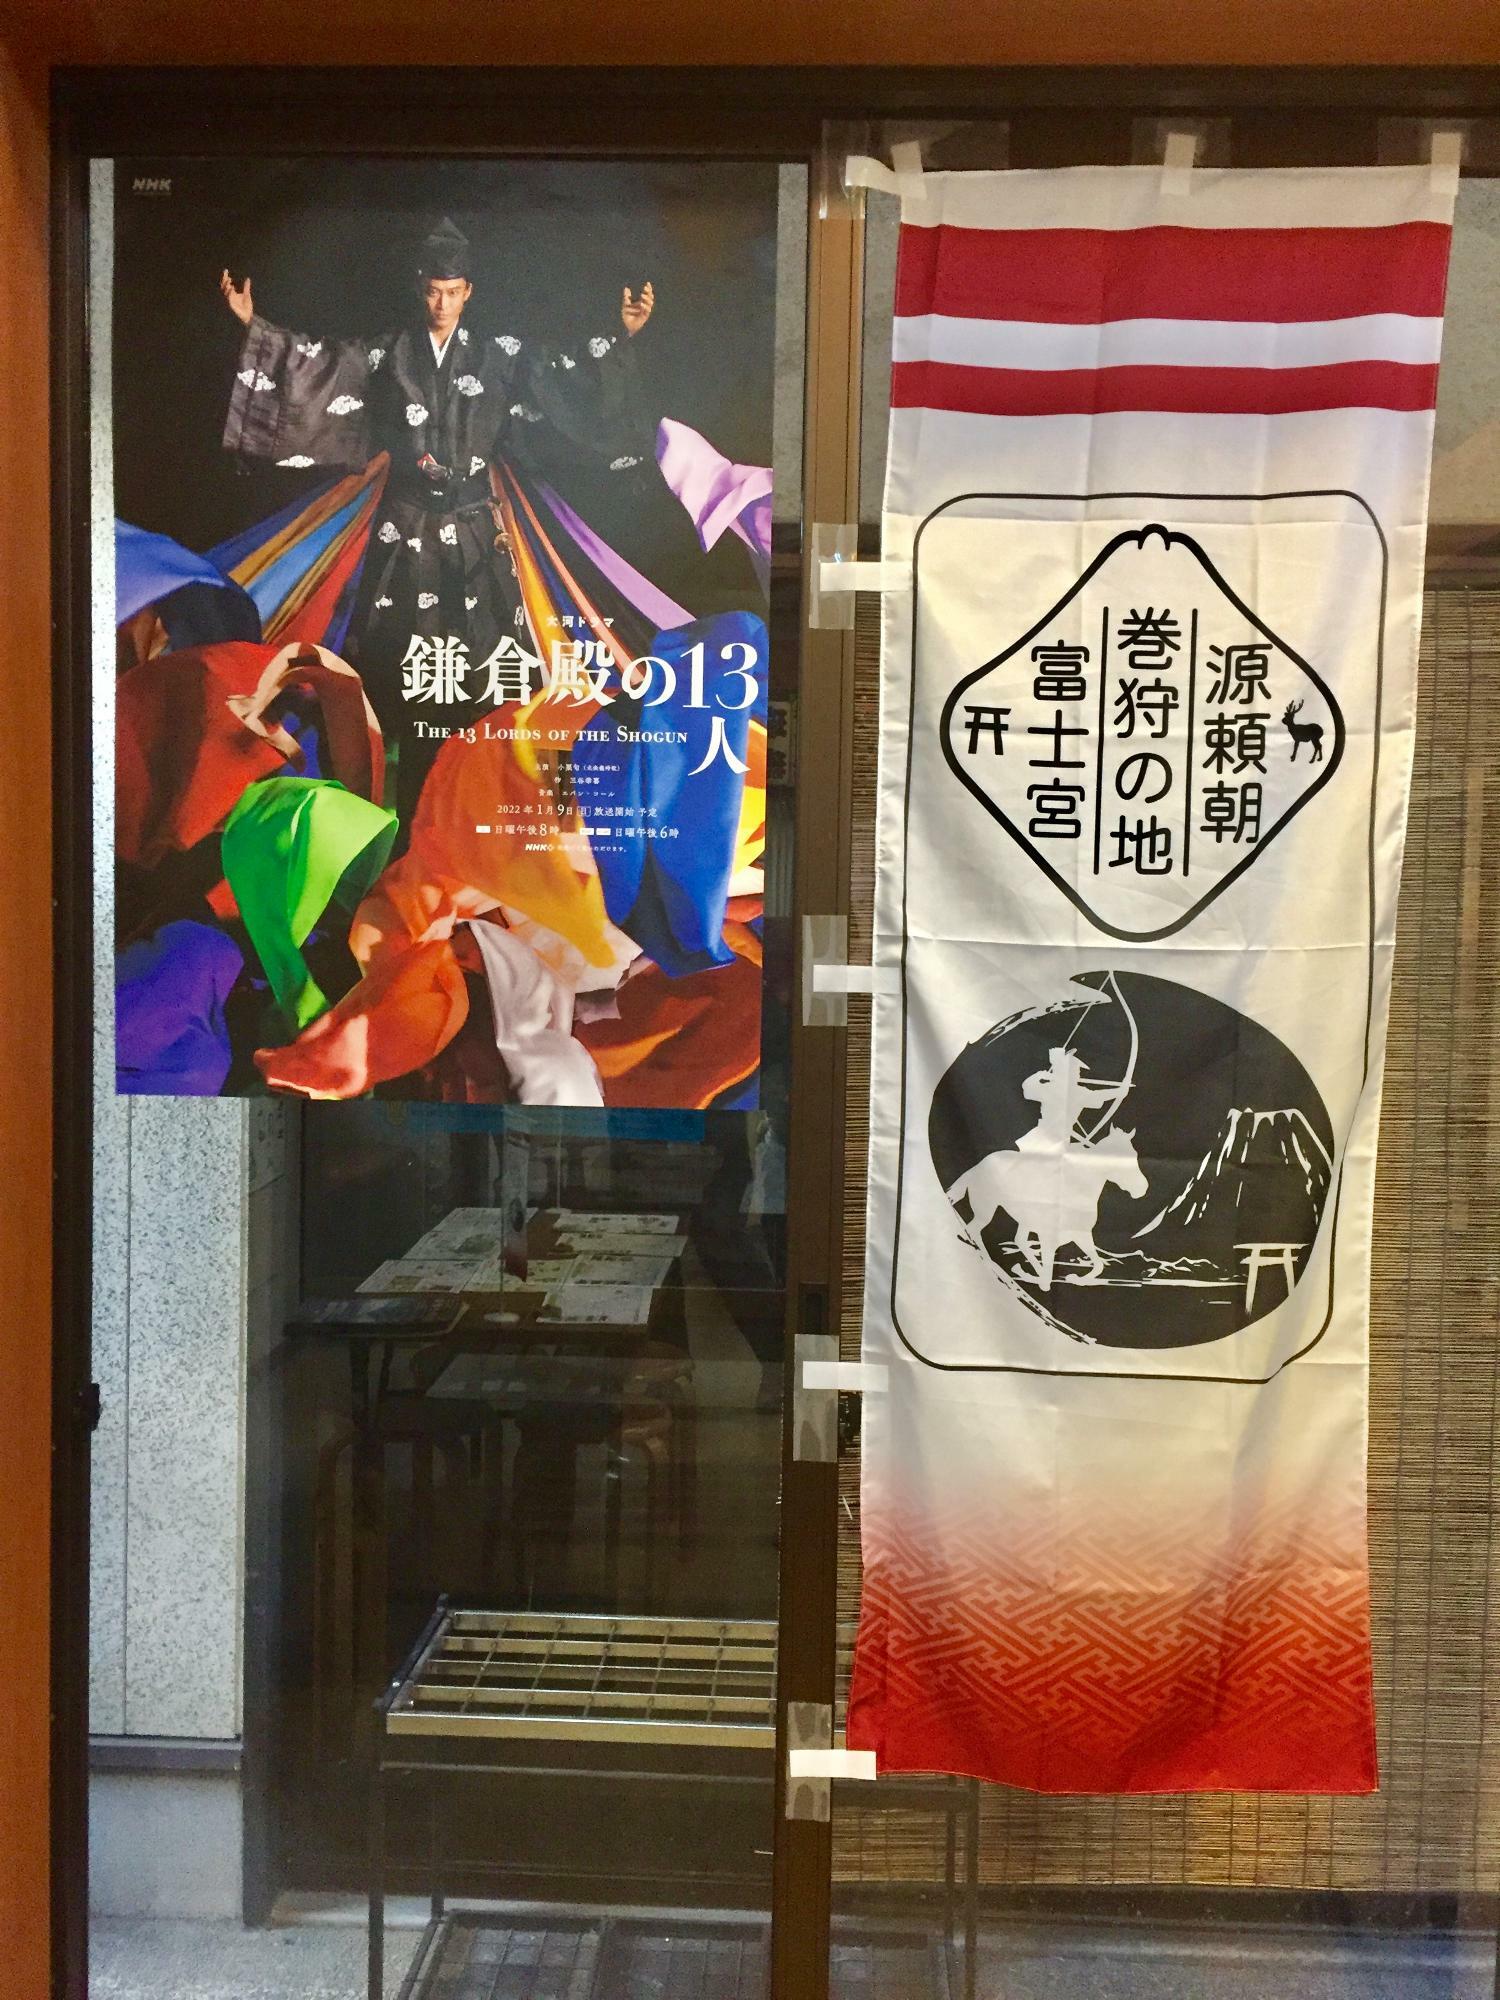 『鎌倉殿の13人』のポスターと『源頼朝巻狩の地富士宮』の旗